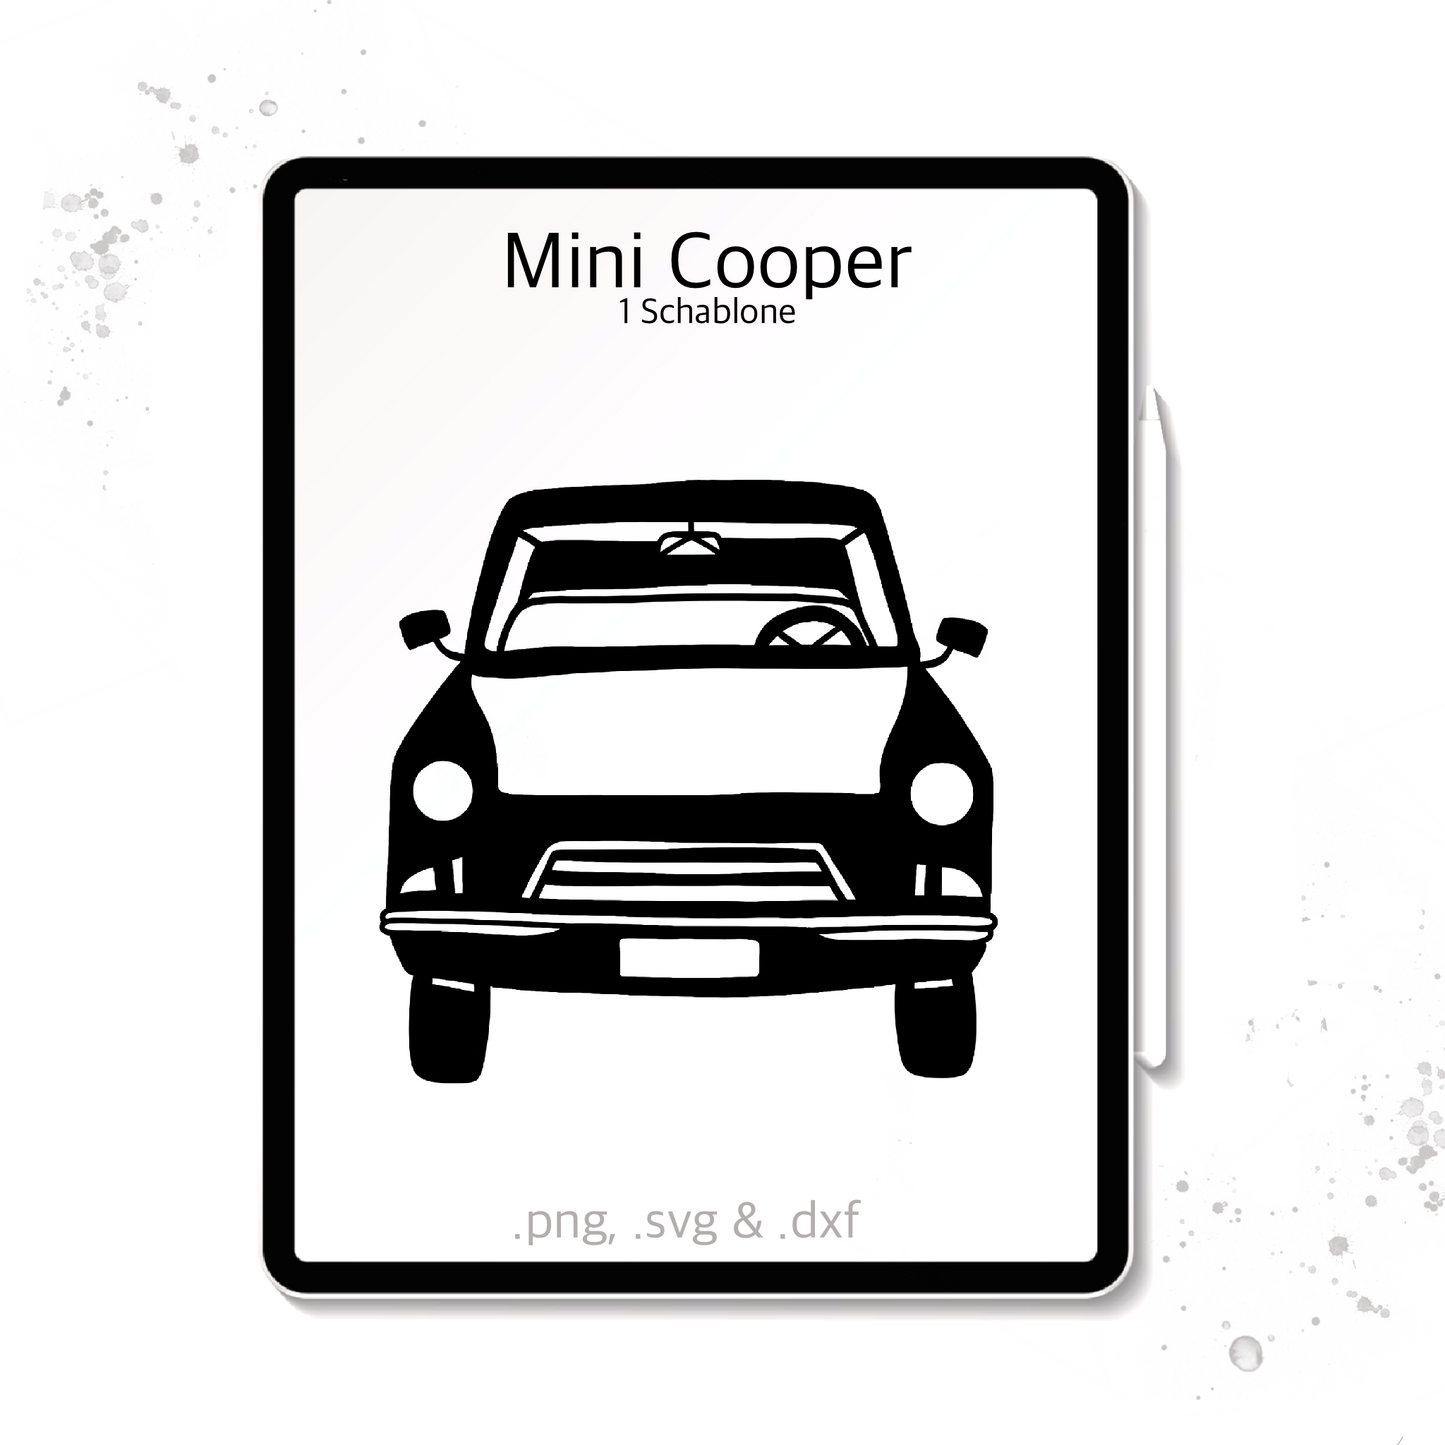 Plotterdatei / Laserdatei Schablonen "Mini Cooper" (.dxf, .svg und .png)